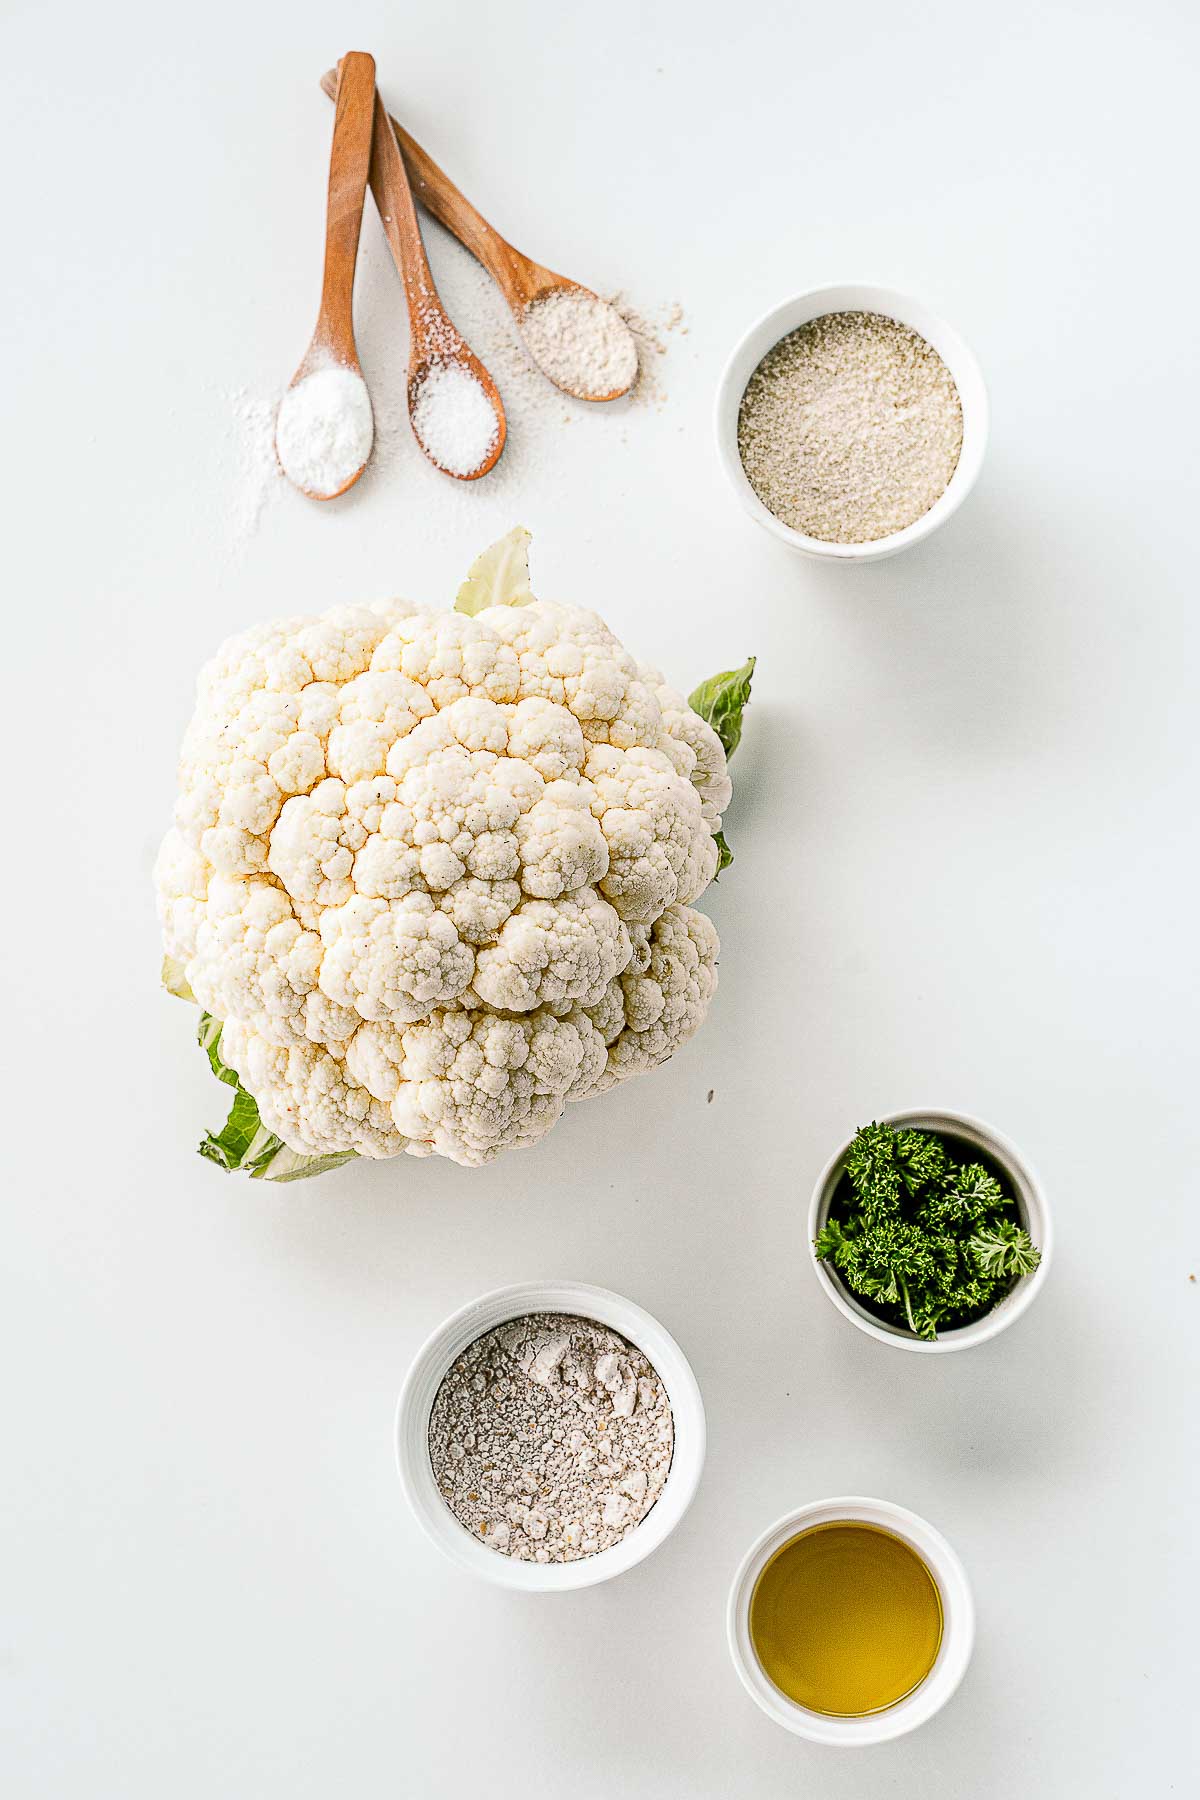 Ingredients to make cauliflower nuggets